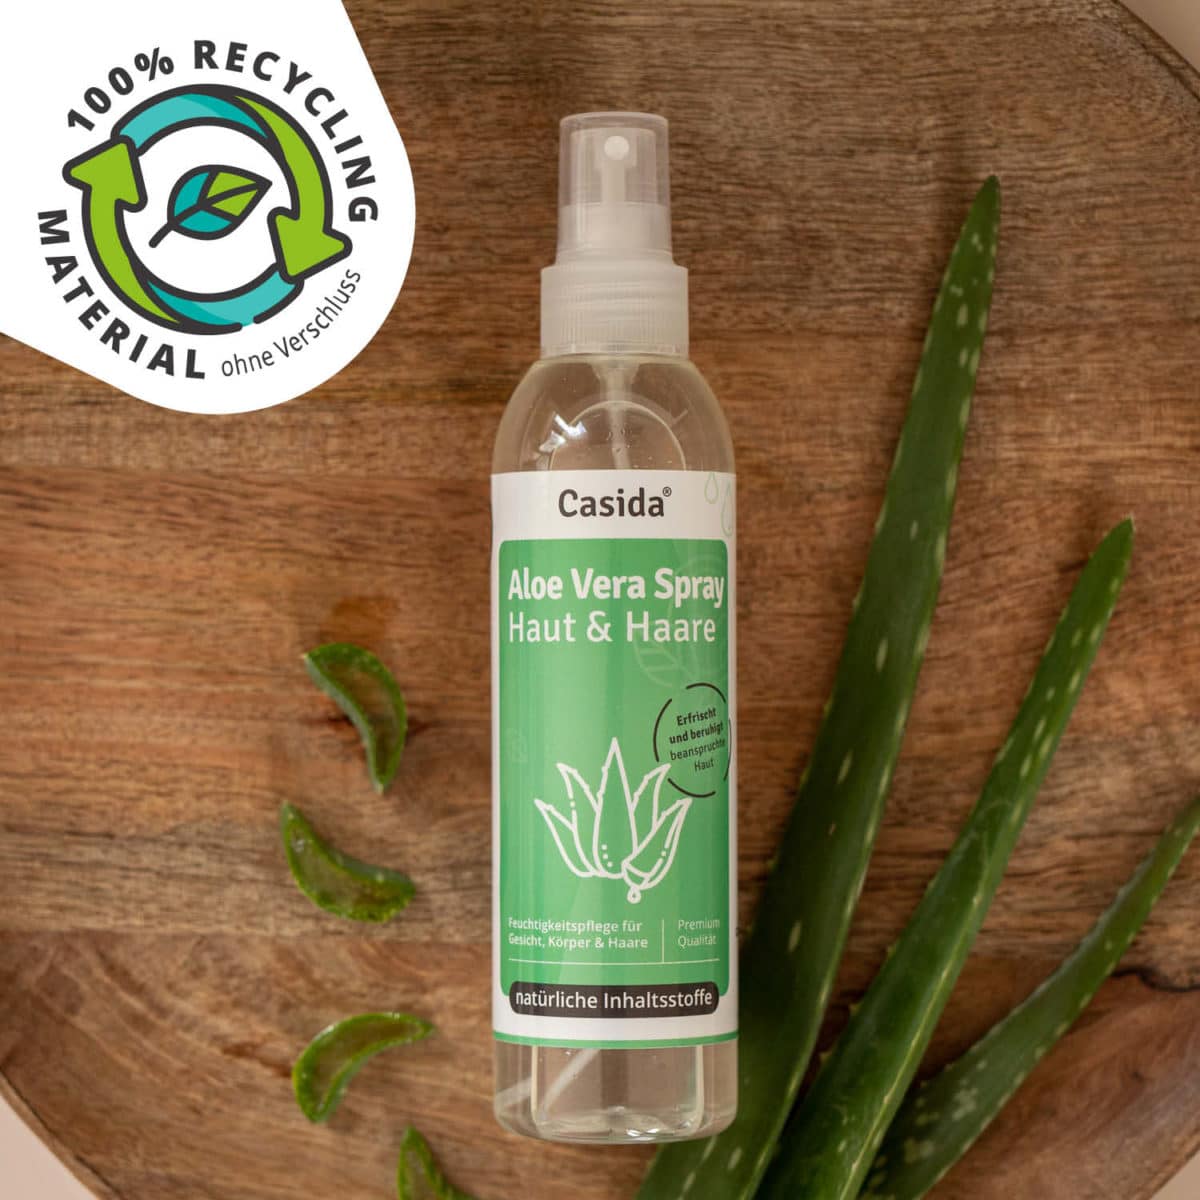 Casida Aloe Vera Spray Haut & Haare 16813047 PZN Apotheke Hautpflege Feuchtigkeitsspendend Sonnenbrand Rasur Hautreizungen3